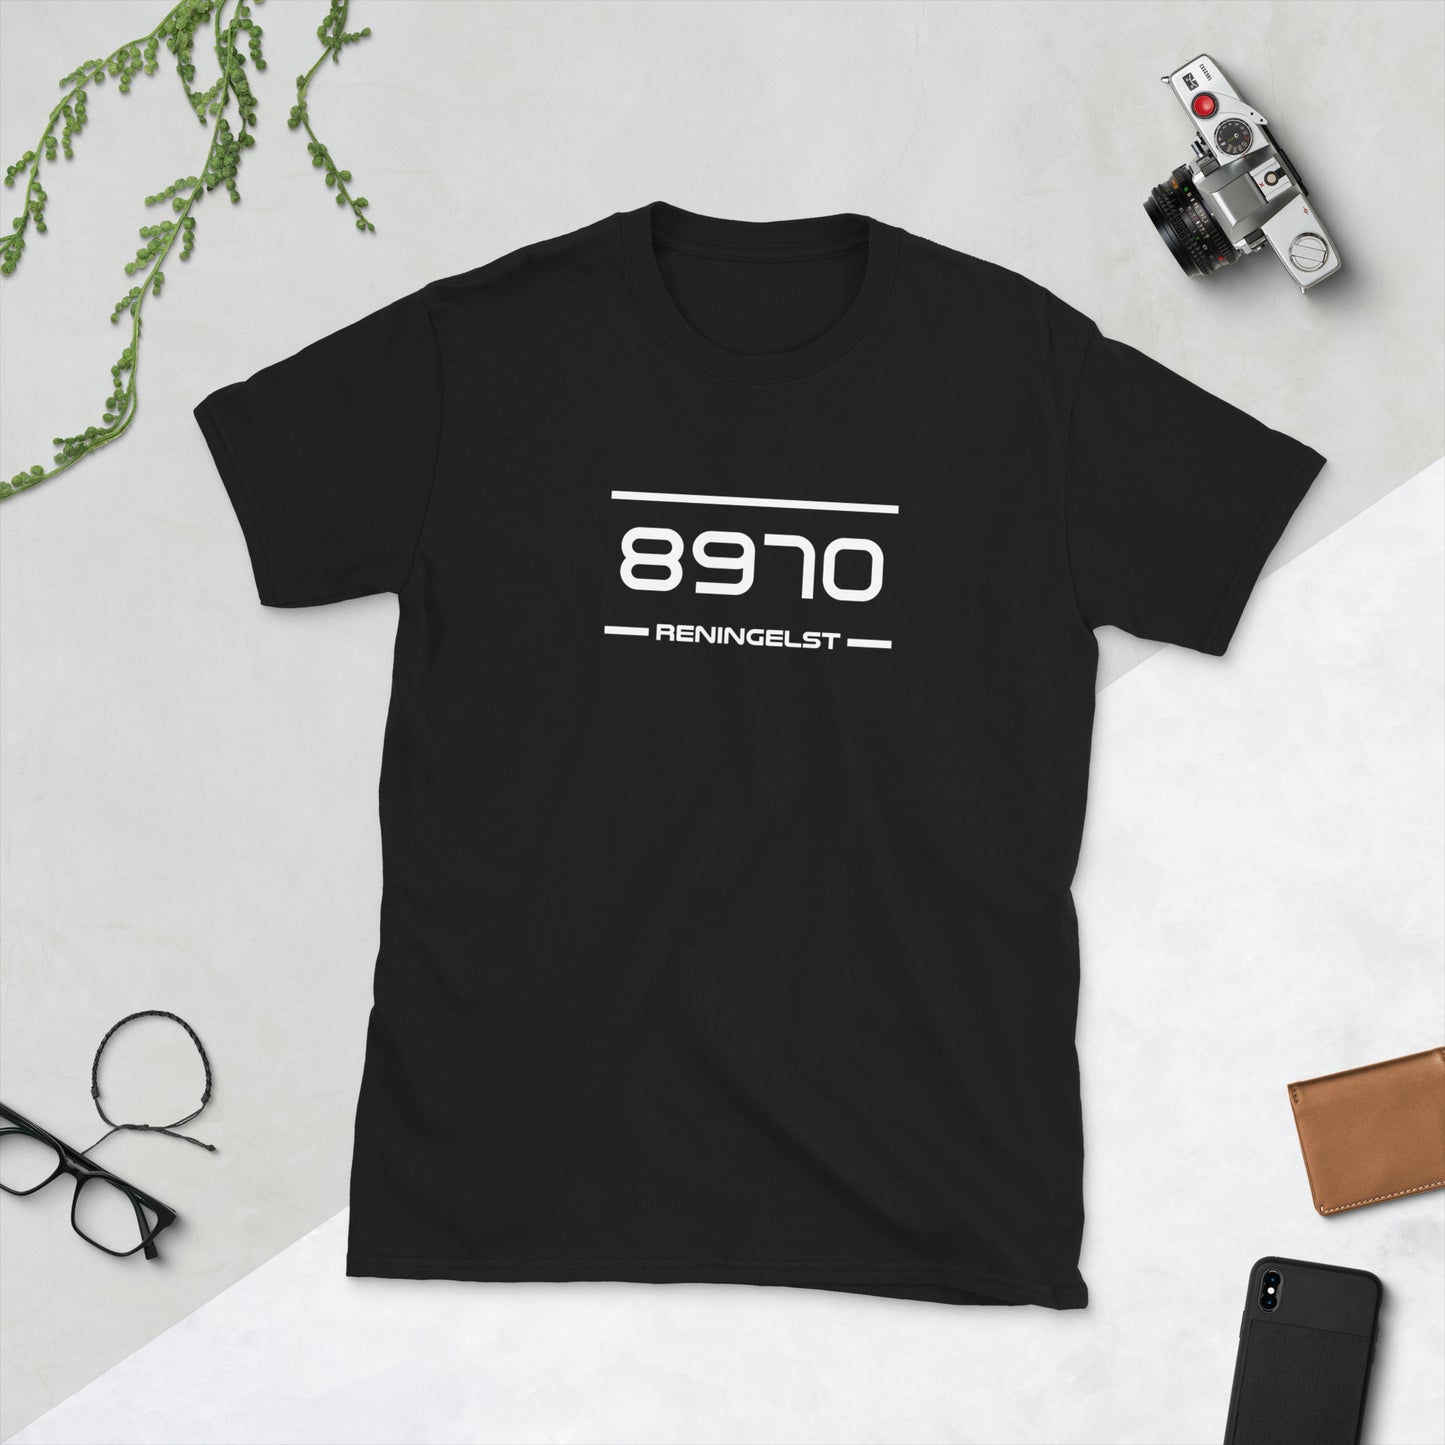 Tshirt - 8970 - Reningelst